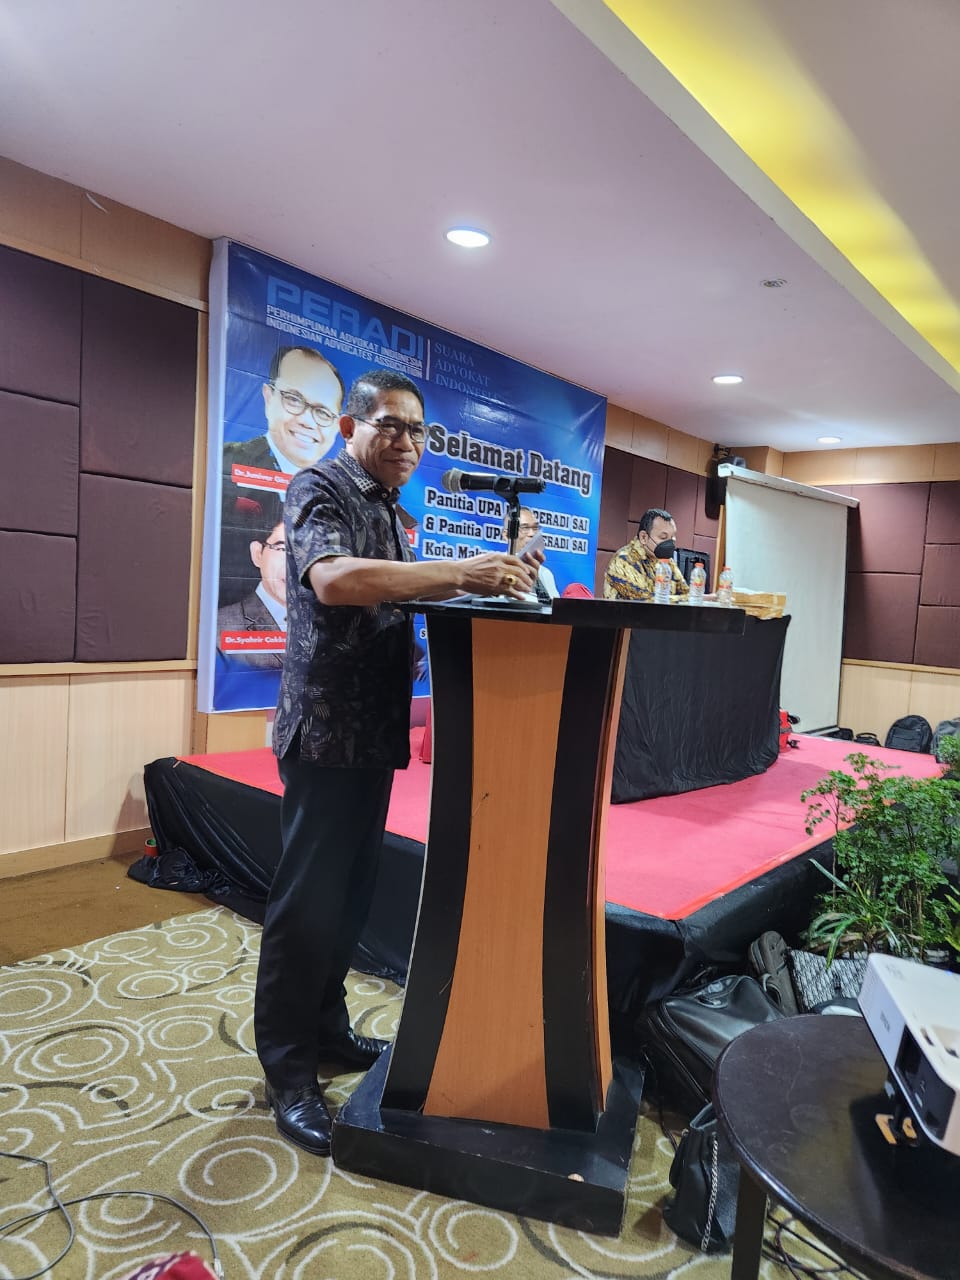 Ujian Profesi Advokat DPC Makassar di Hotel Swiss Belinn Panakkukang Makassar - 05 November 2022